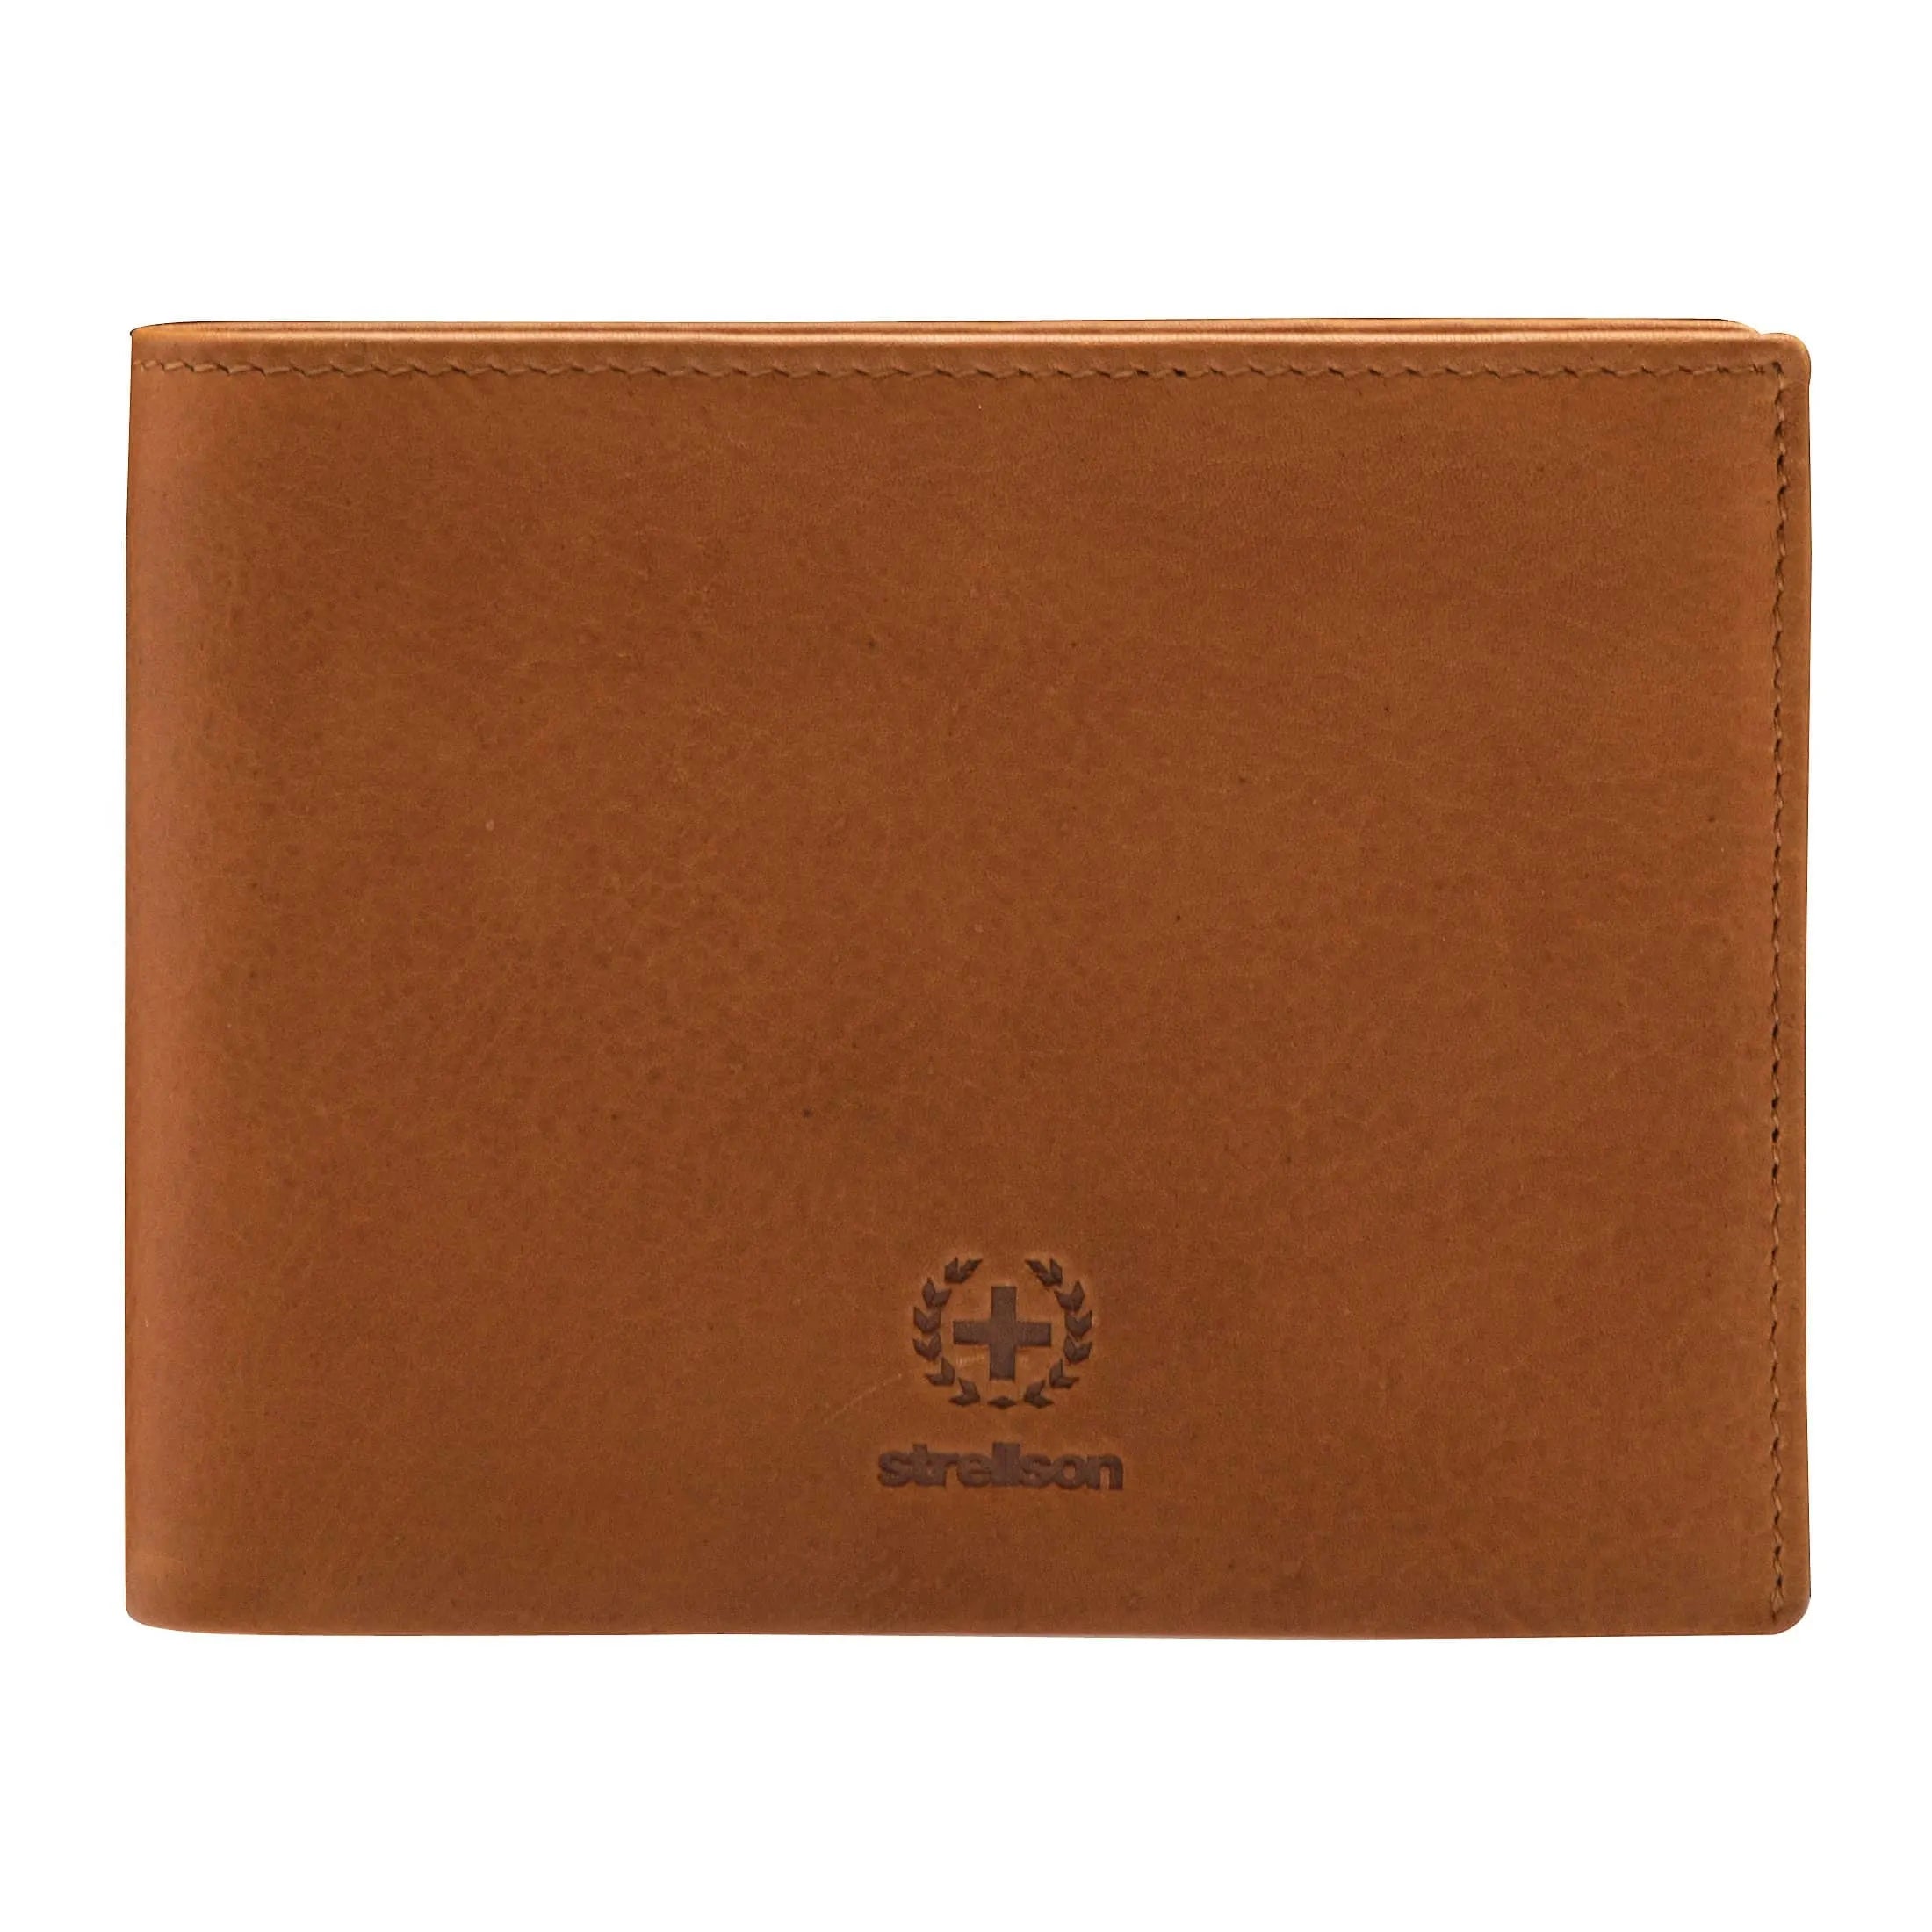 Strellson Blackwall wallet H8 11 cm - Cognac